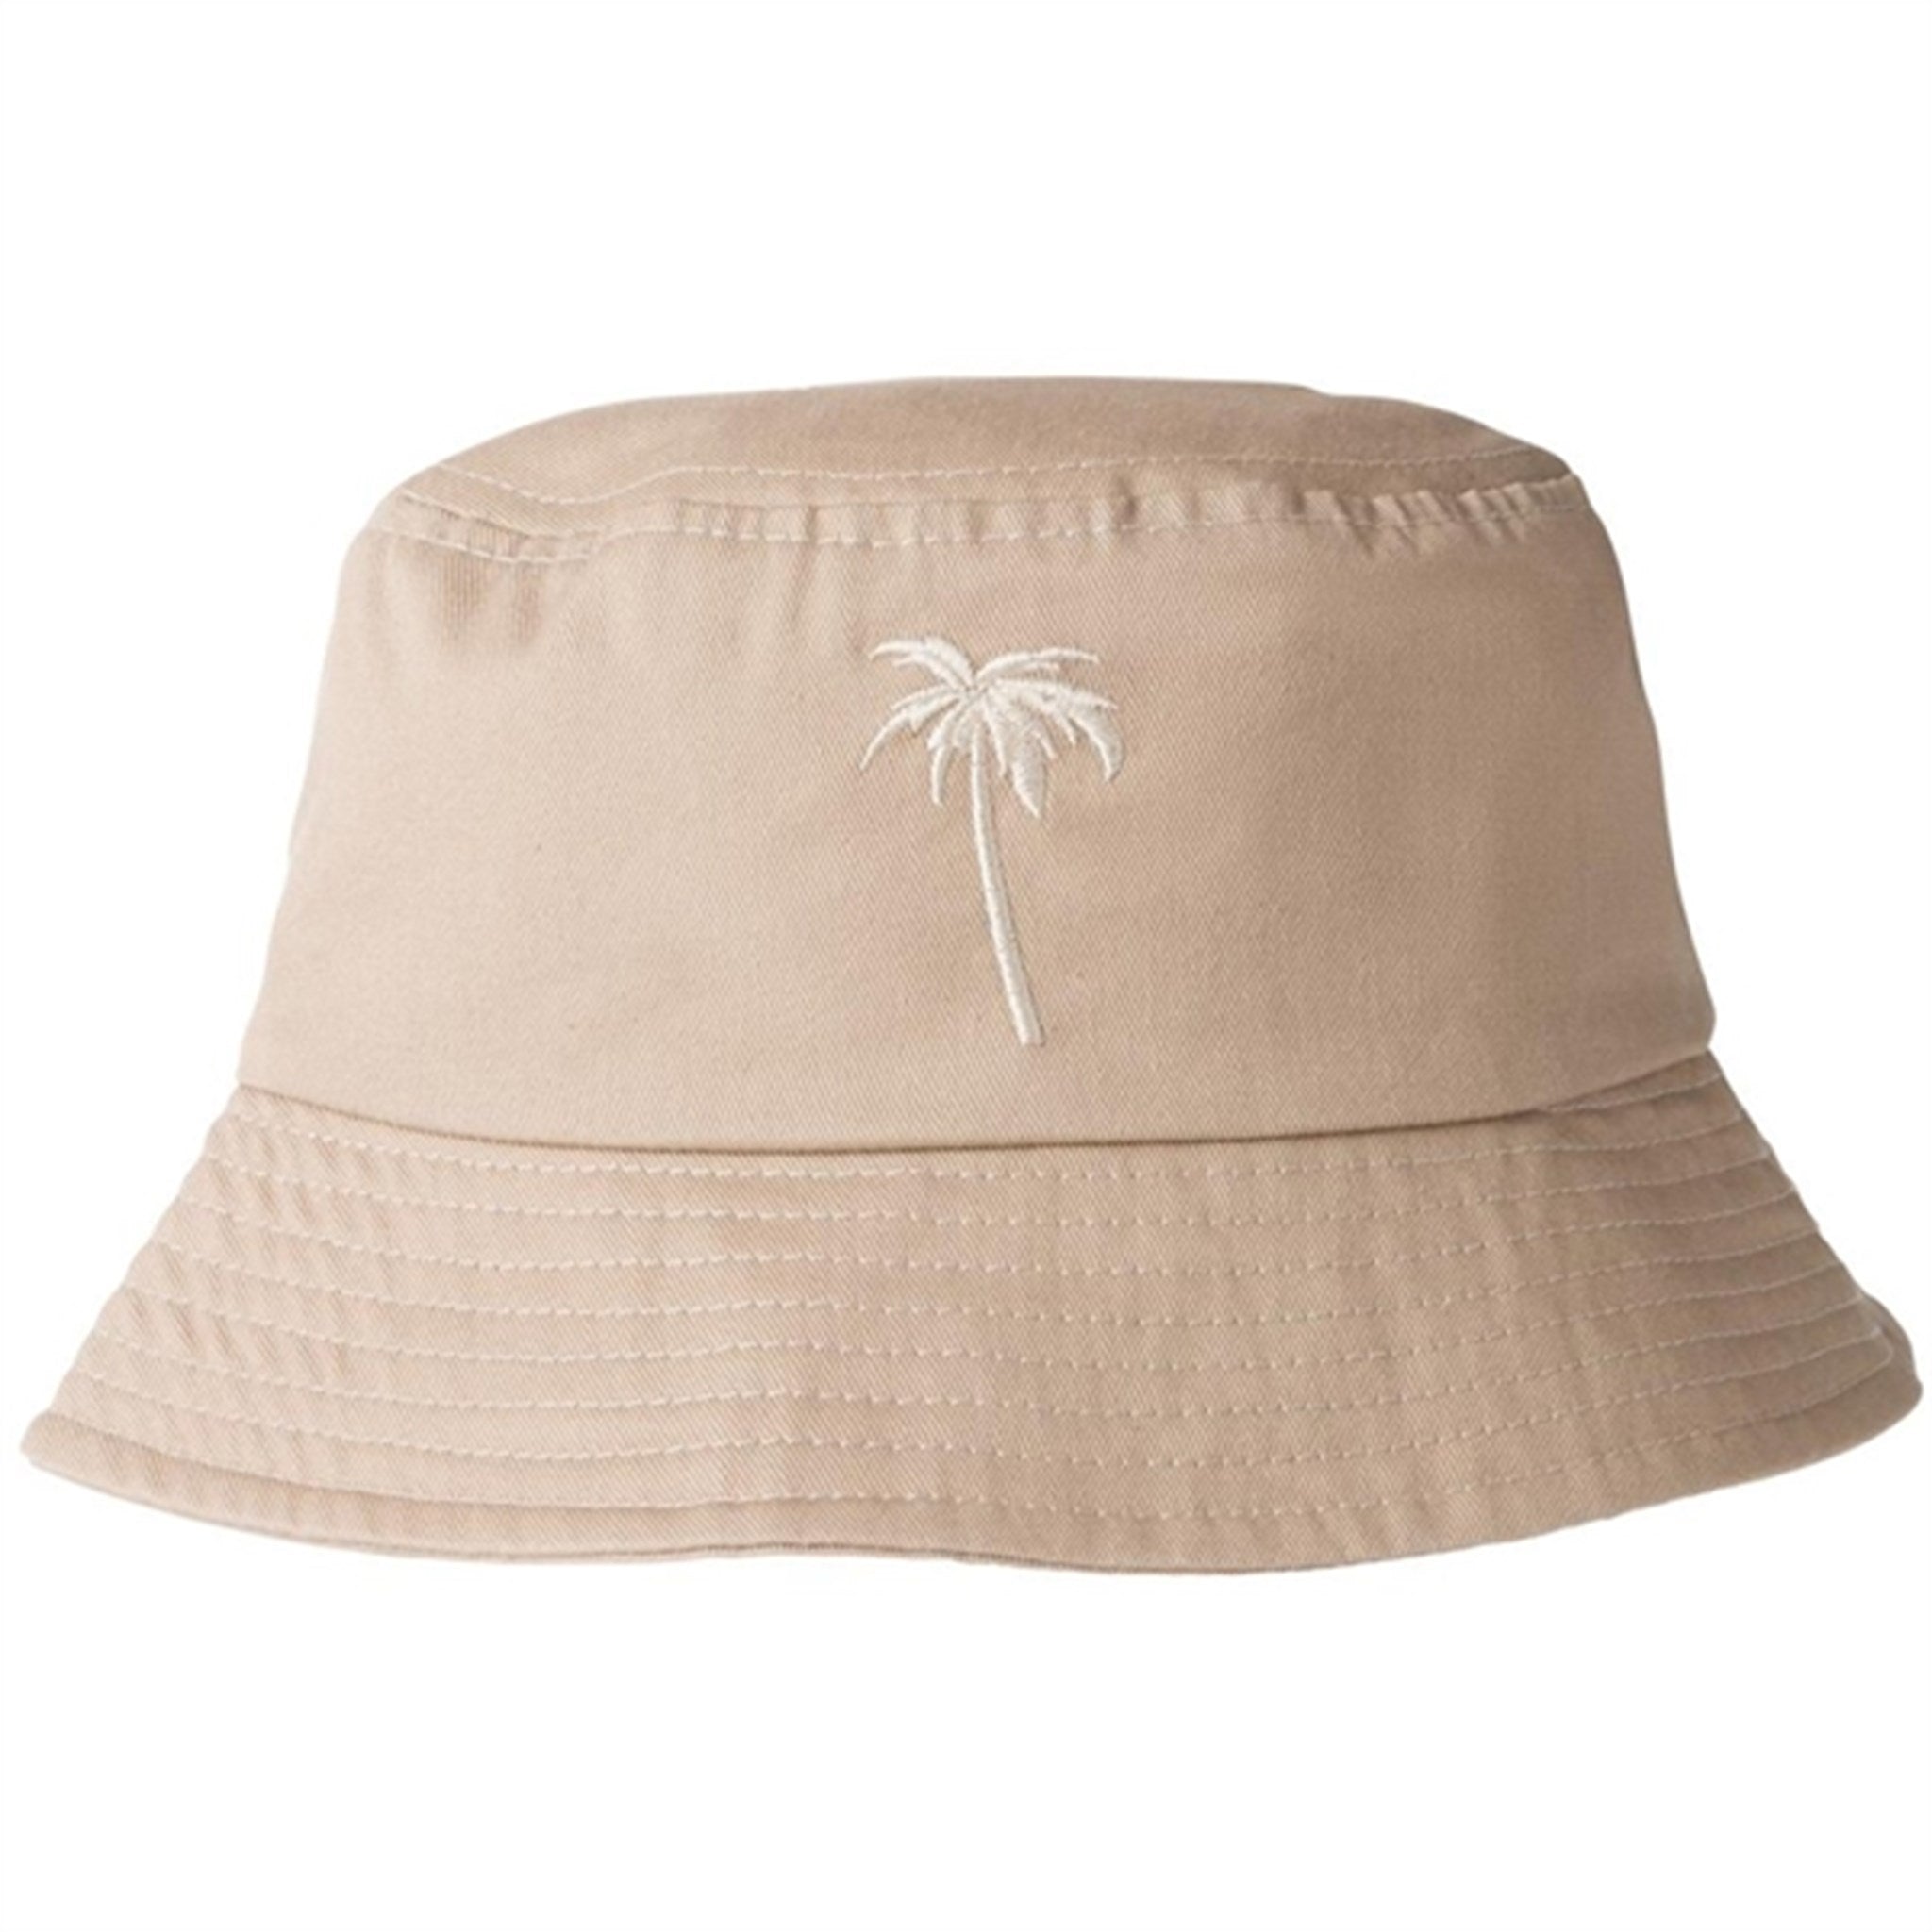 Name it Pure Cashmere Palm Nolo Bobbare Hatt